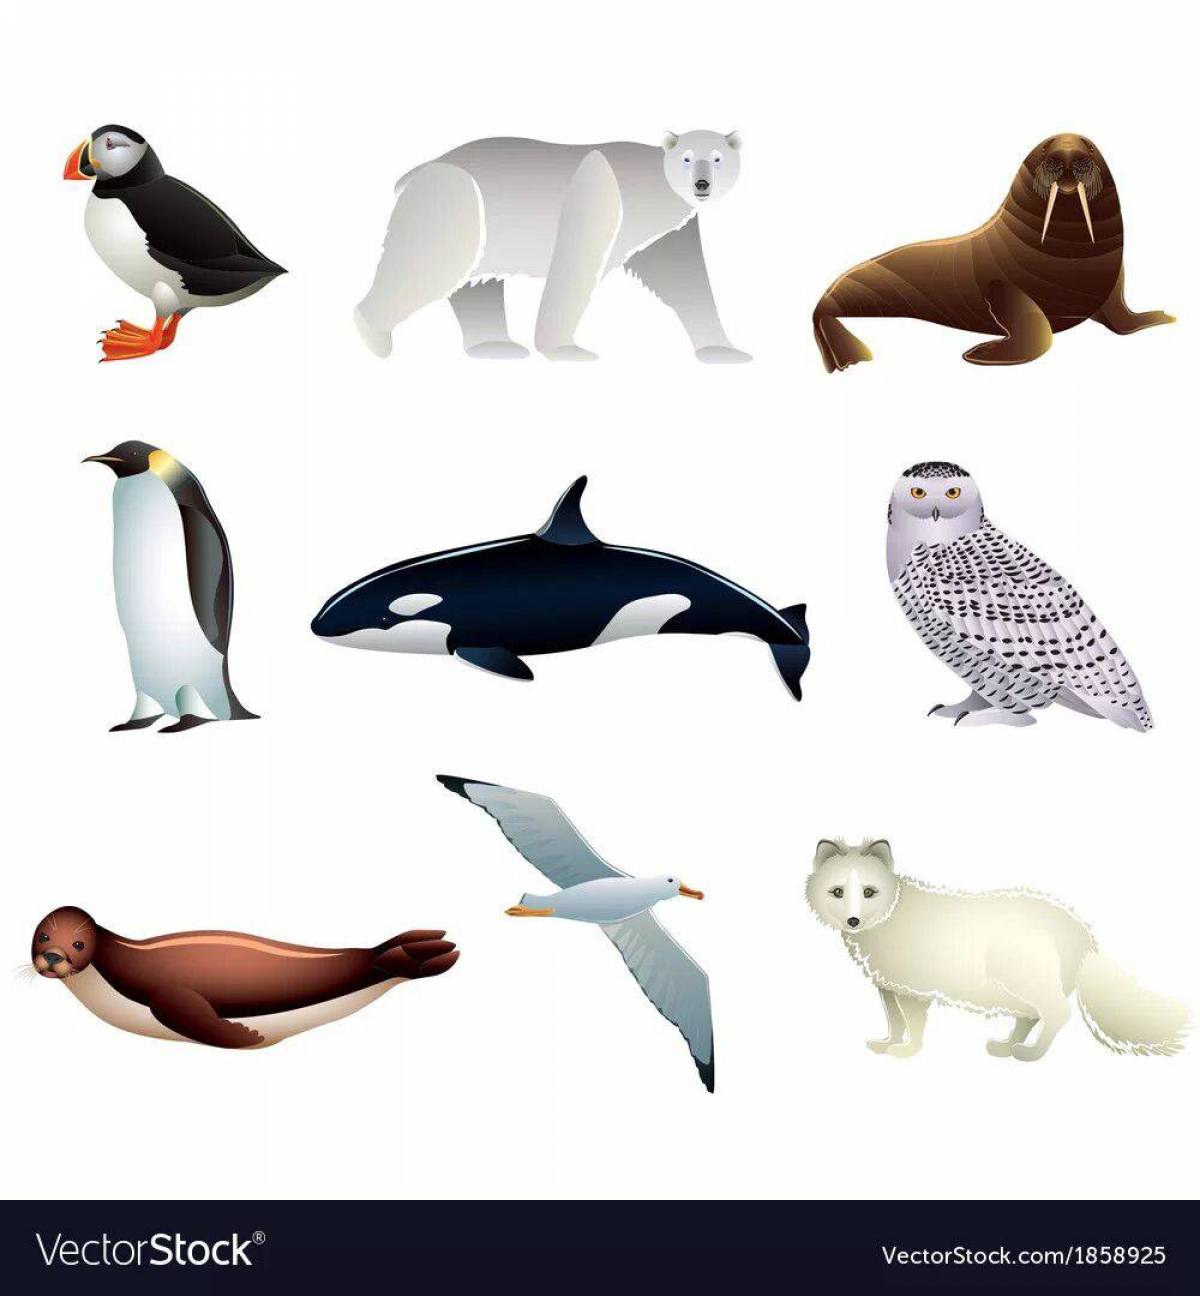 Животные арктики и антарктики для детей #6